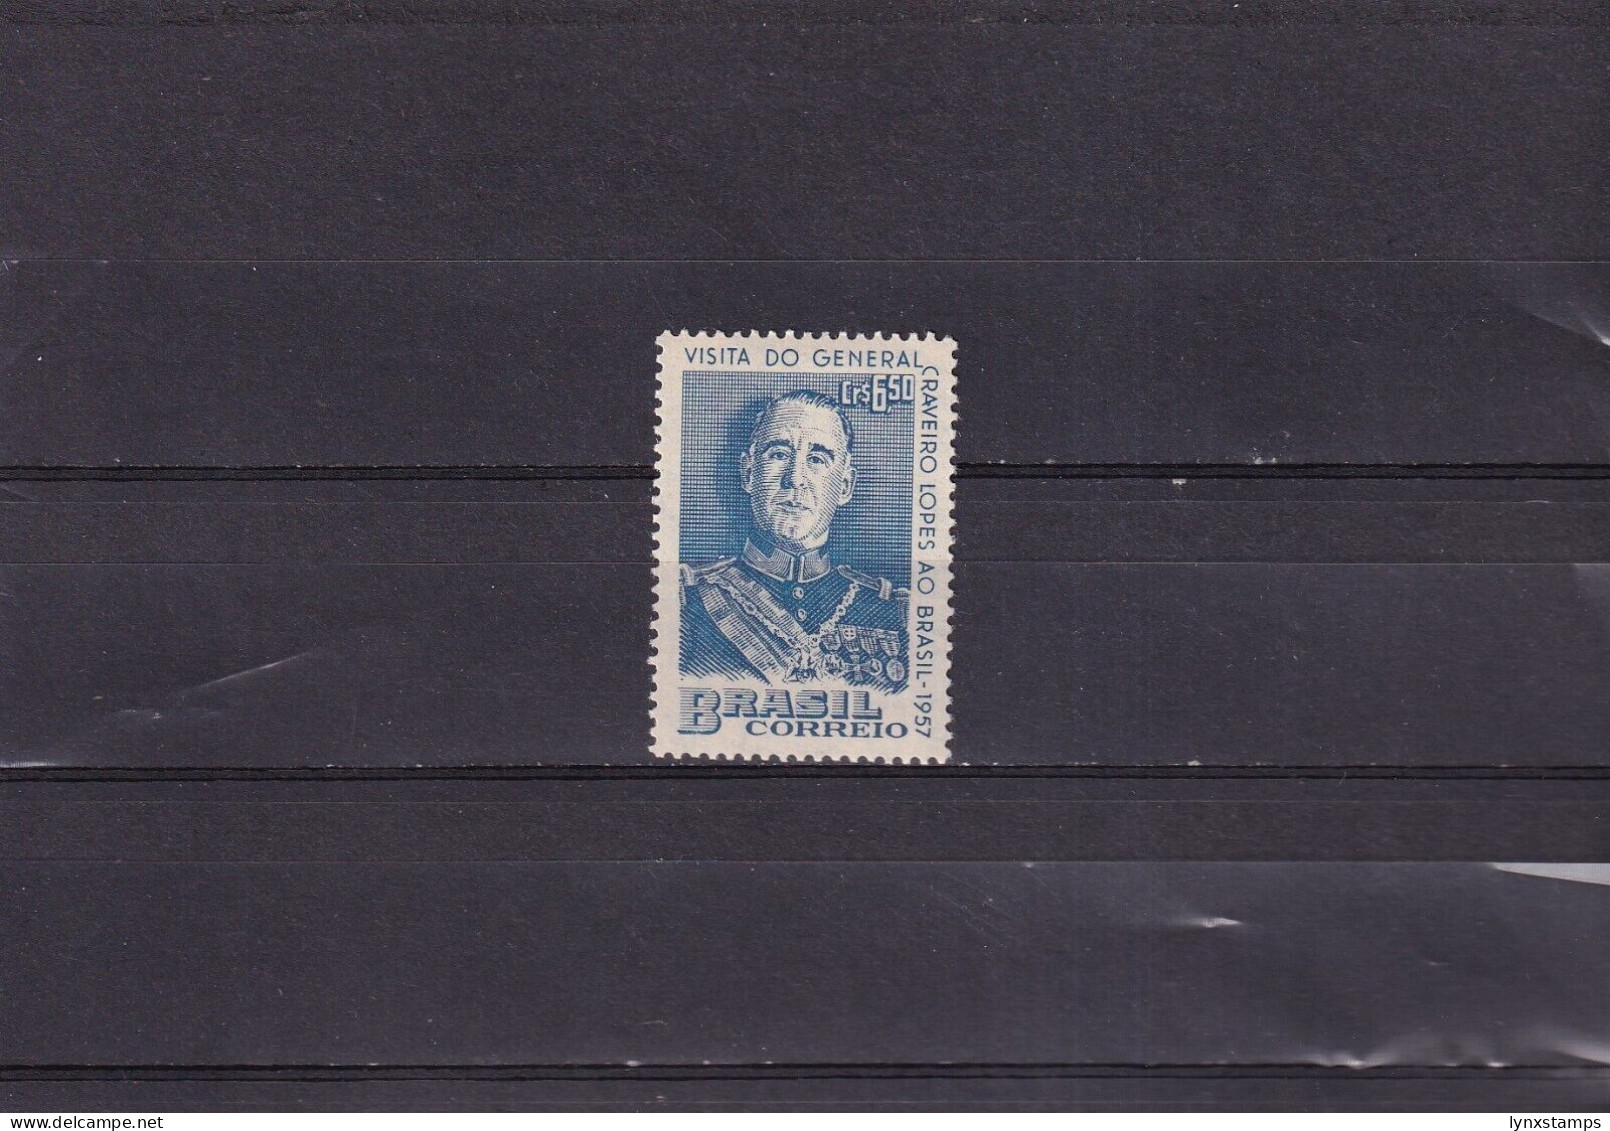 ER03 Brazil 1957 Visit Of Portugal's President - MNH Stamp - Ongebruikt